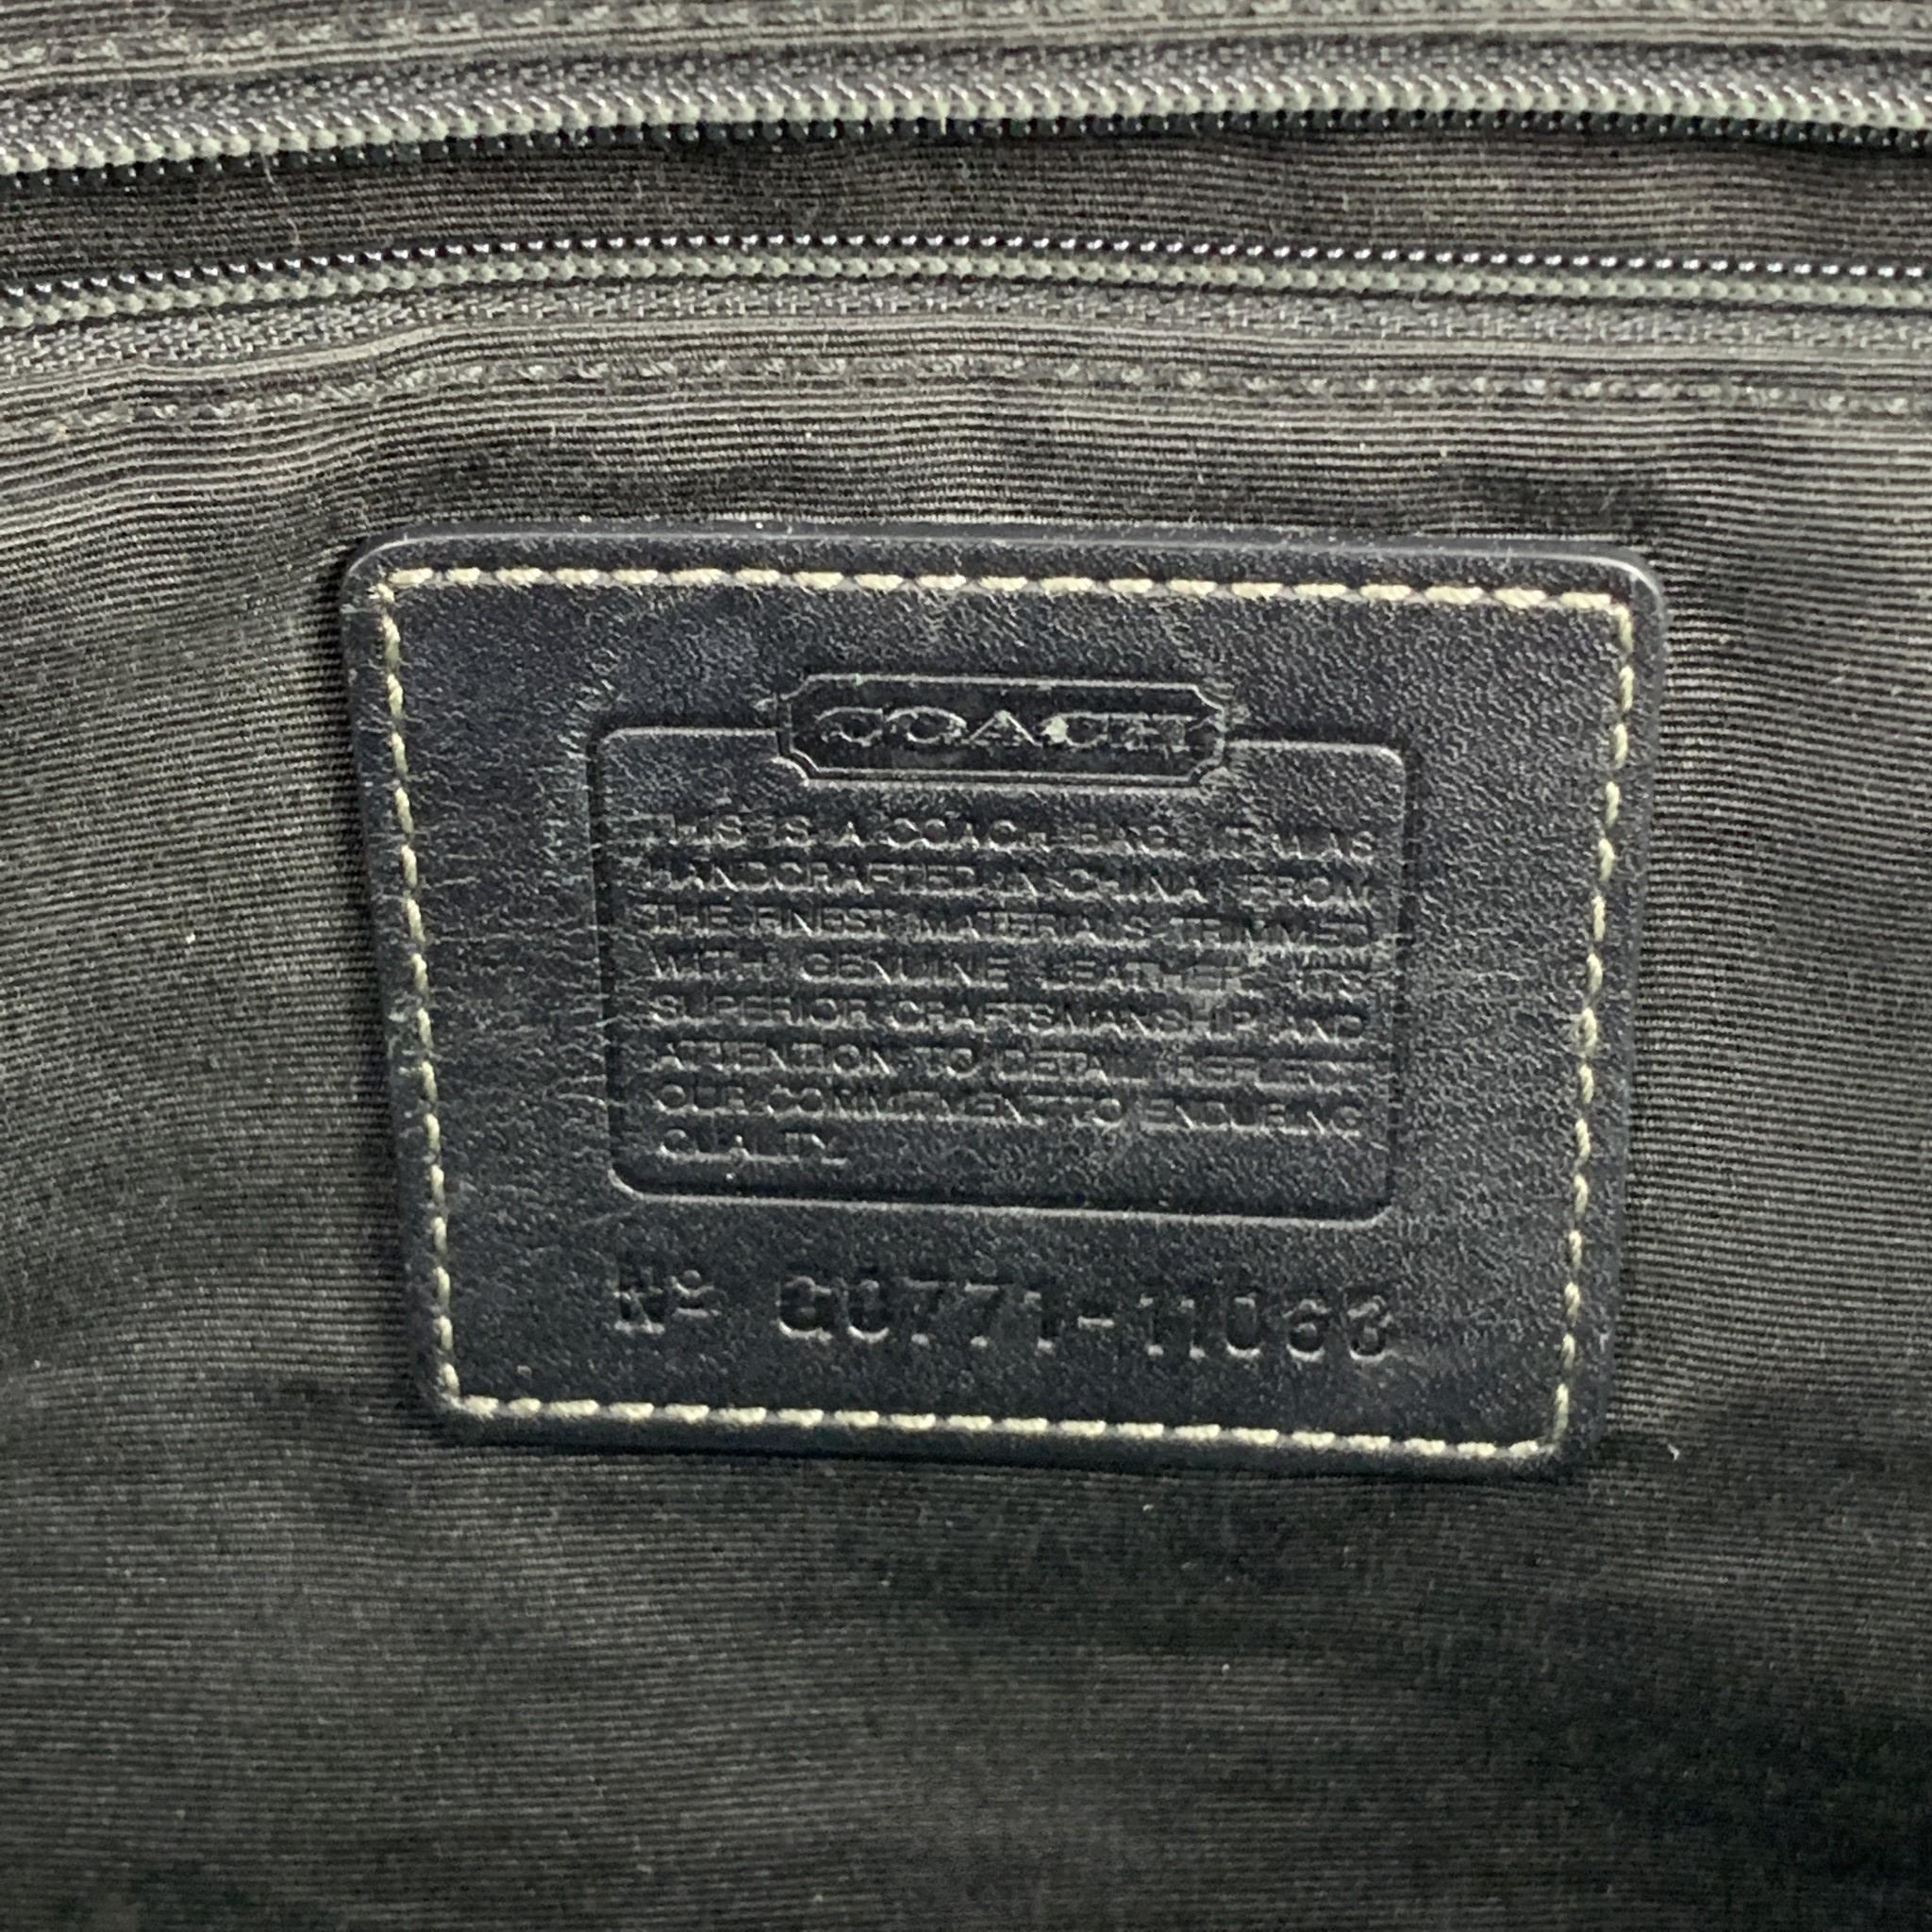 COACH Black Monogram Canvas Top Handles Handbag 4